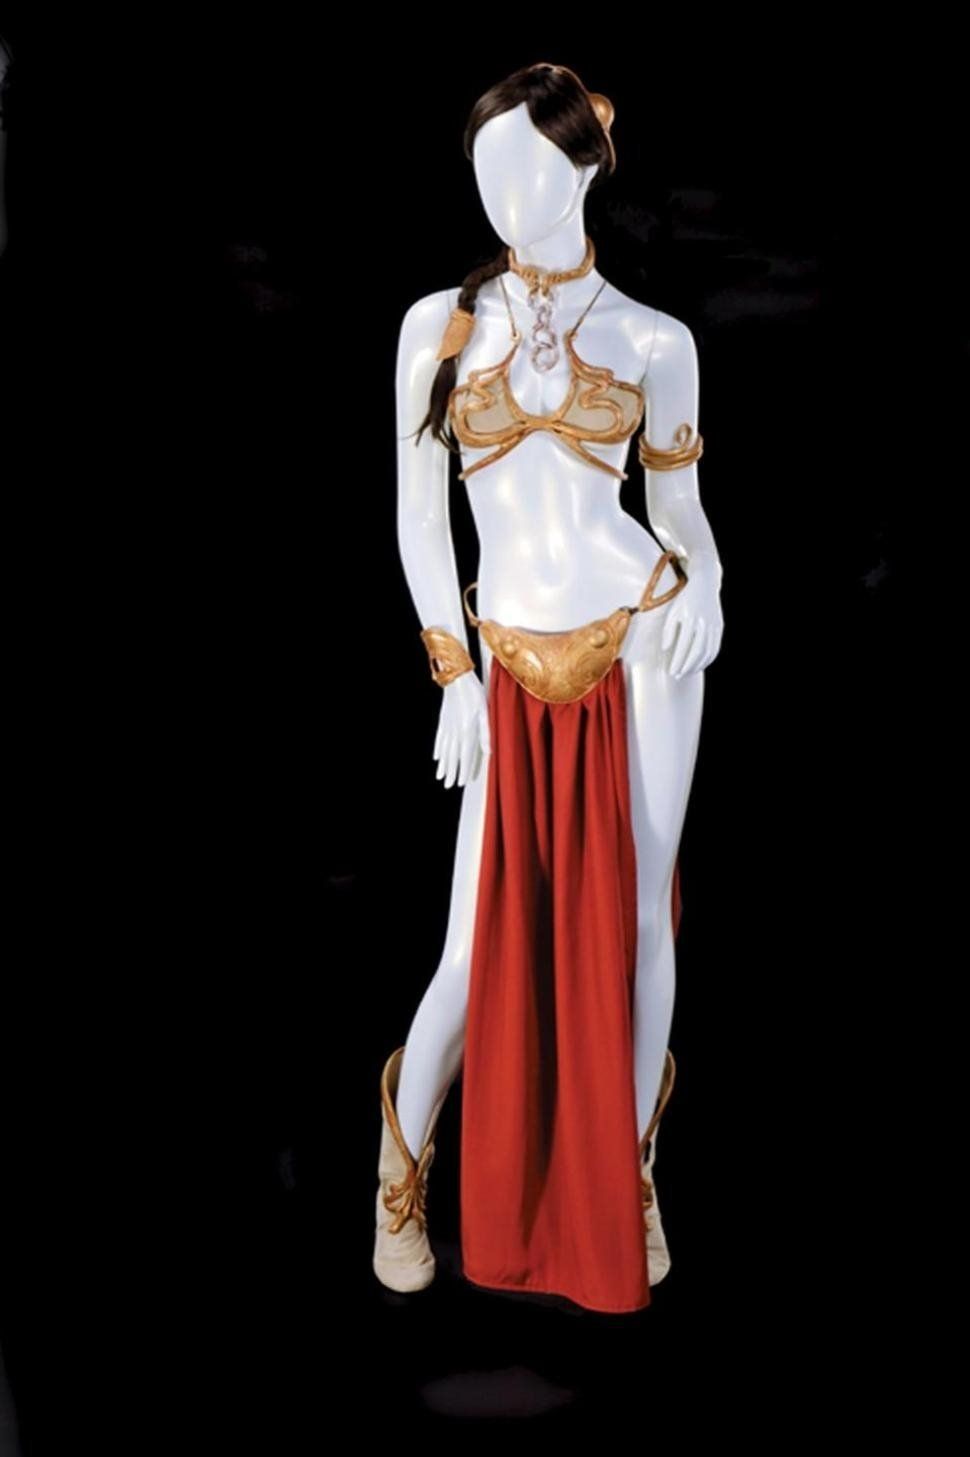 Princess Leia bikini sells for $96,000 - BBC News